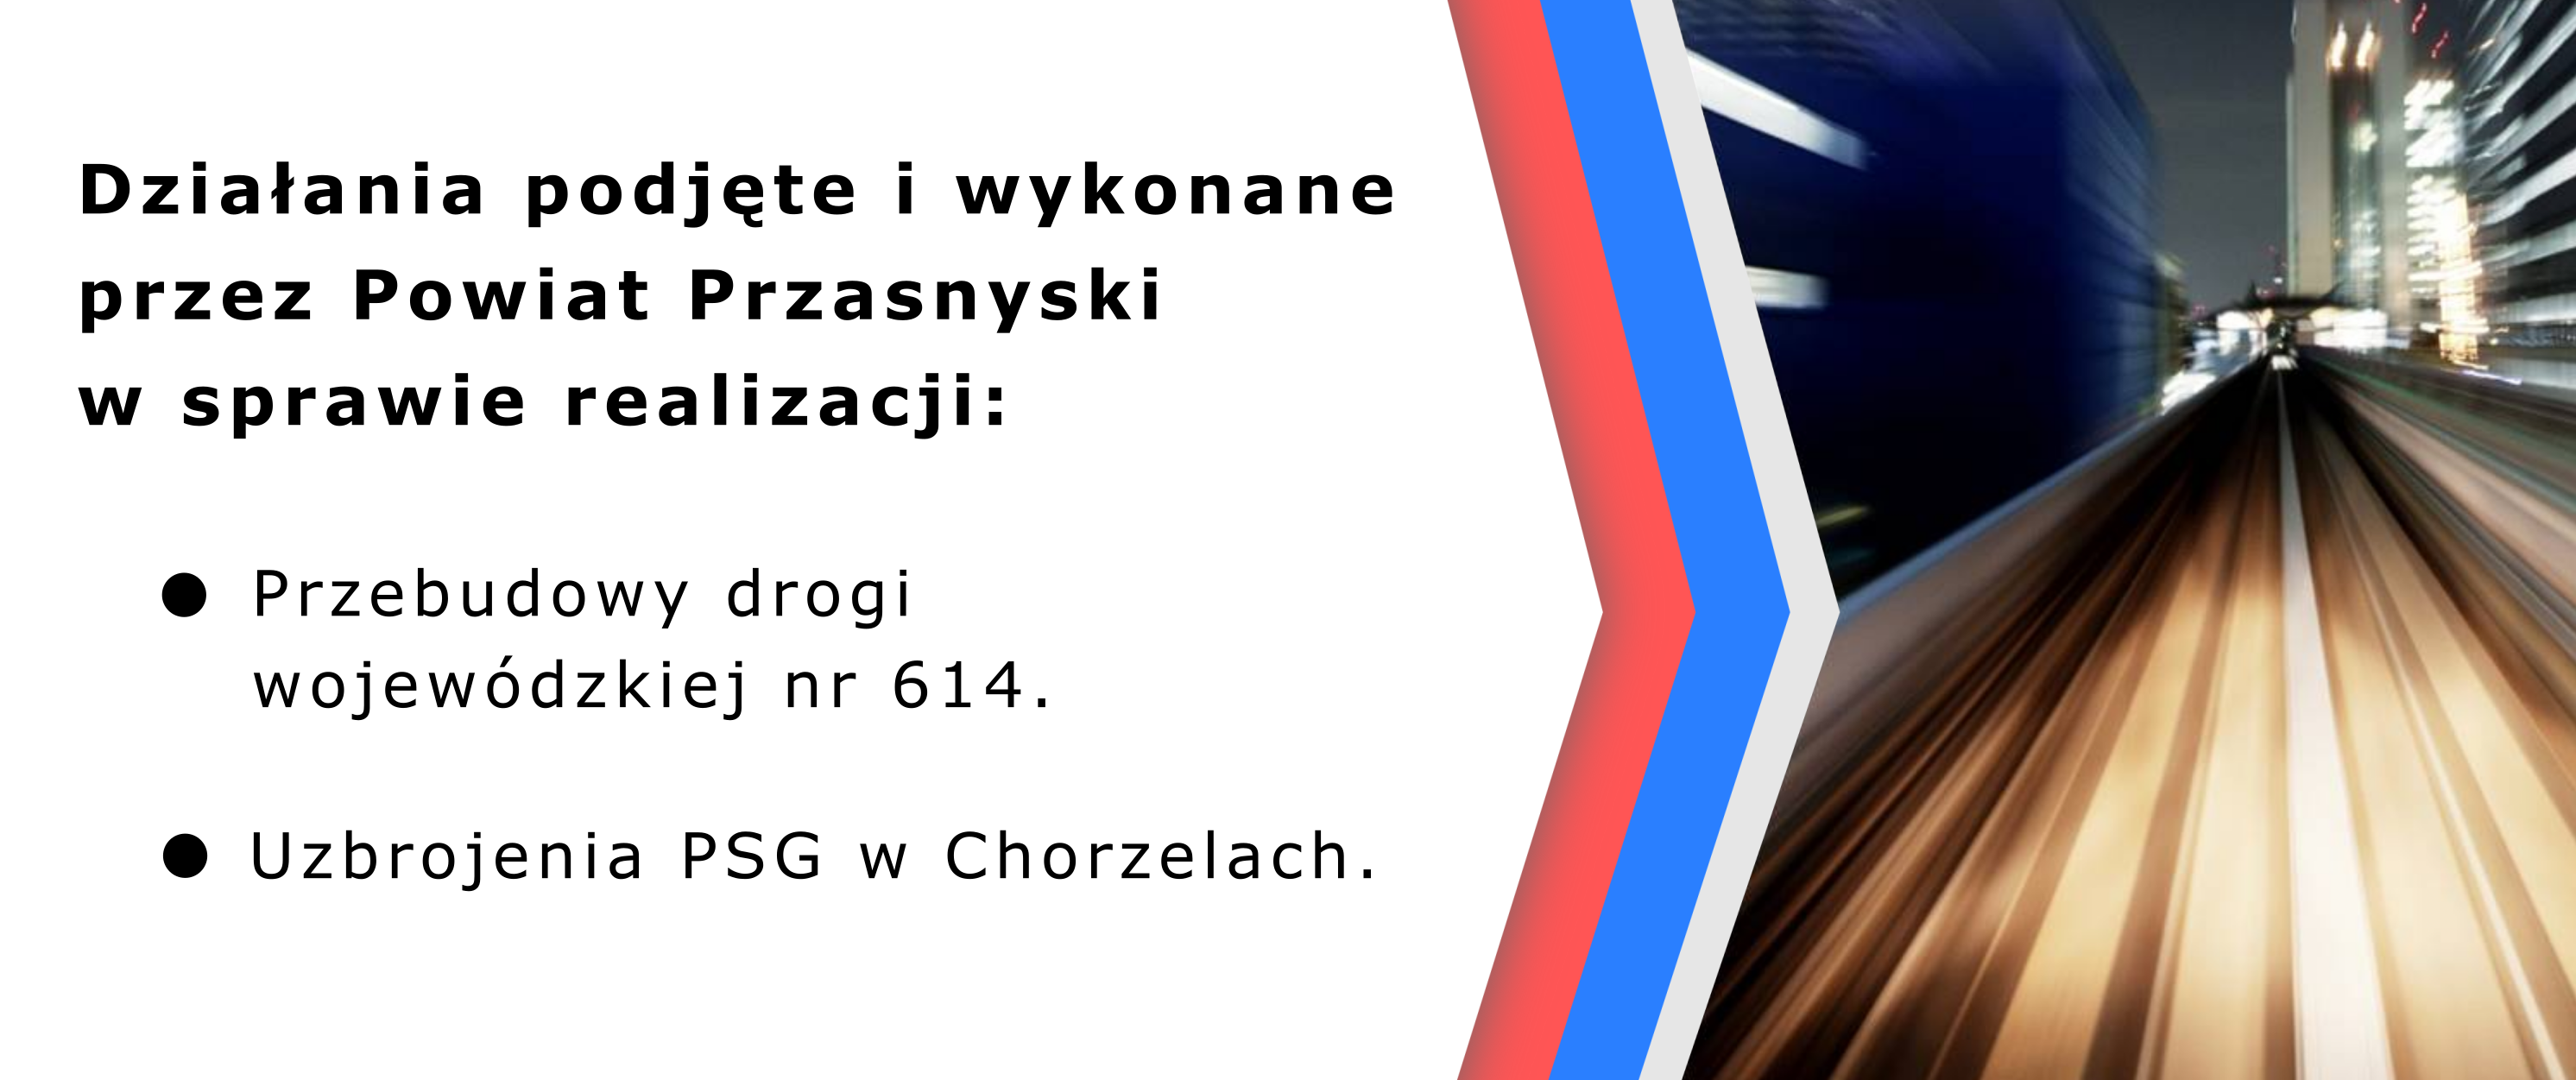 Grafika z prezentacji o działaniach Powiatu Przasnyskiego odnośnie drogi wojewódzkiej 614 i strefy gospodarczej w Chorzelach